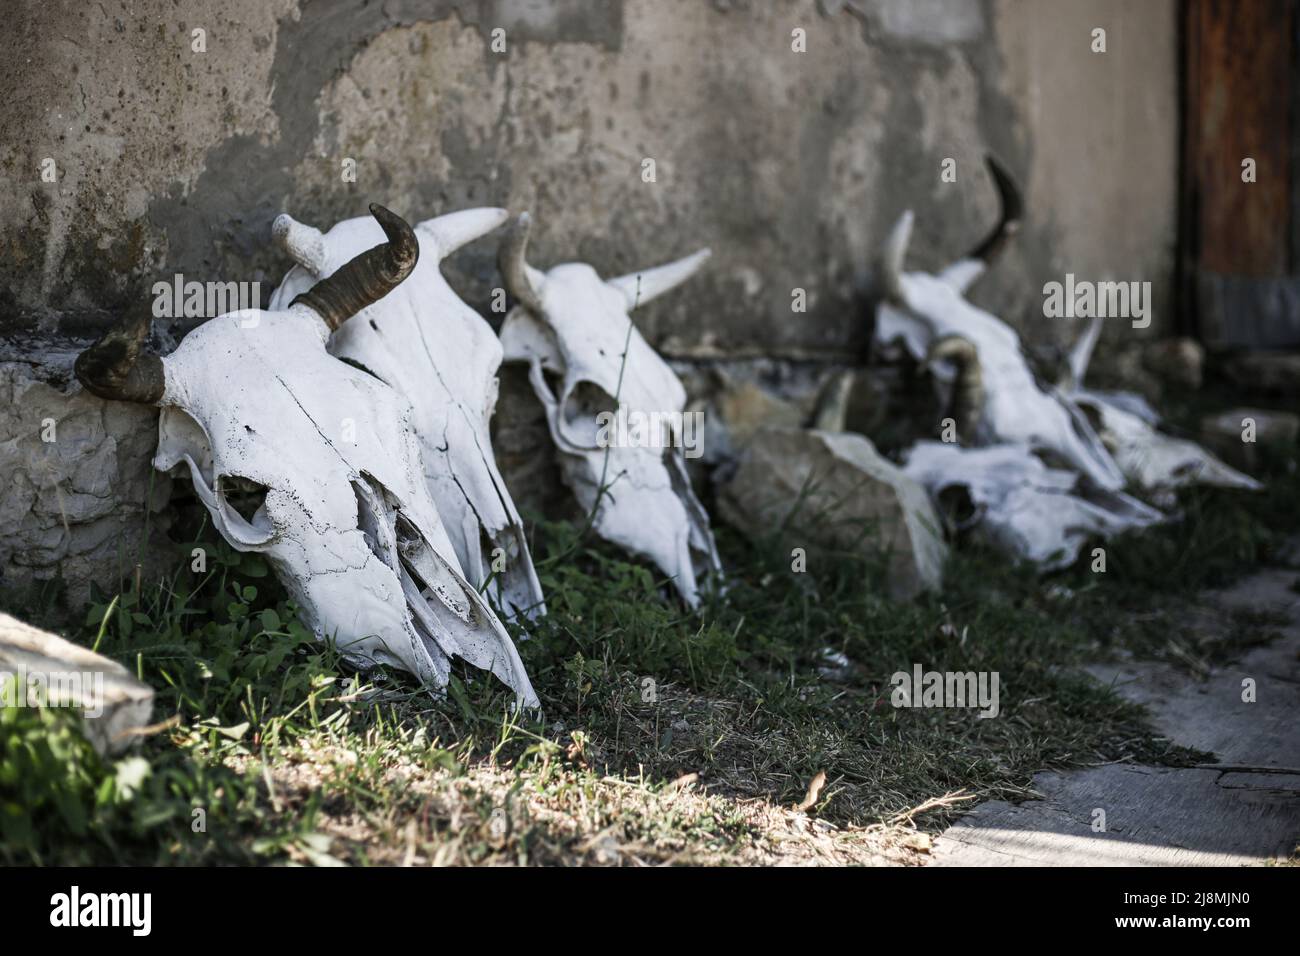 Squelettes de tête (crâne) d'une vache à cornes debout le long d'un mur en béton à l'ombre, par une journée ensoleillée Banque D'Images